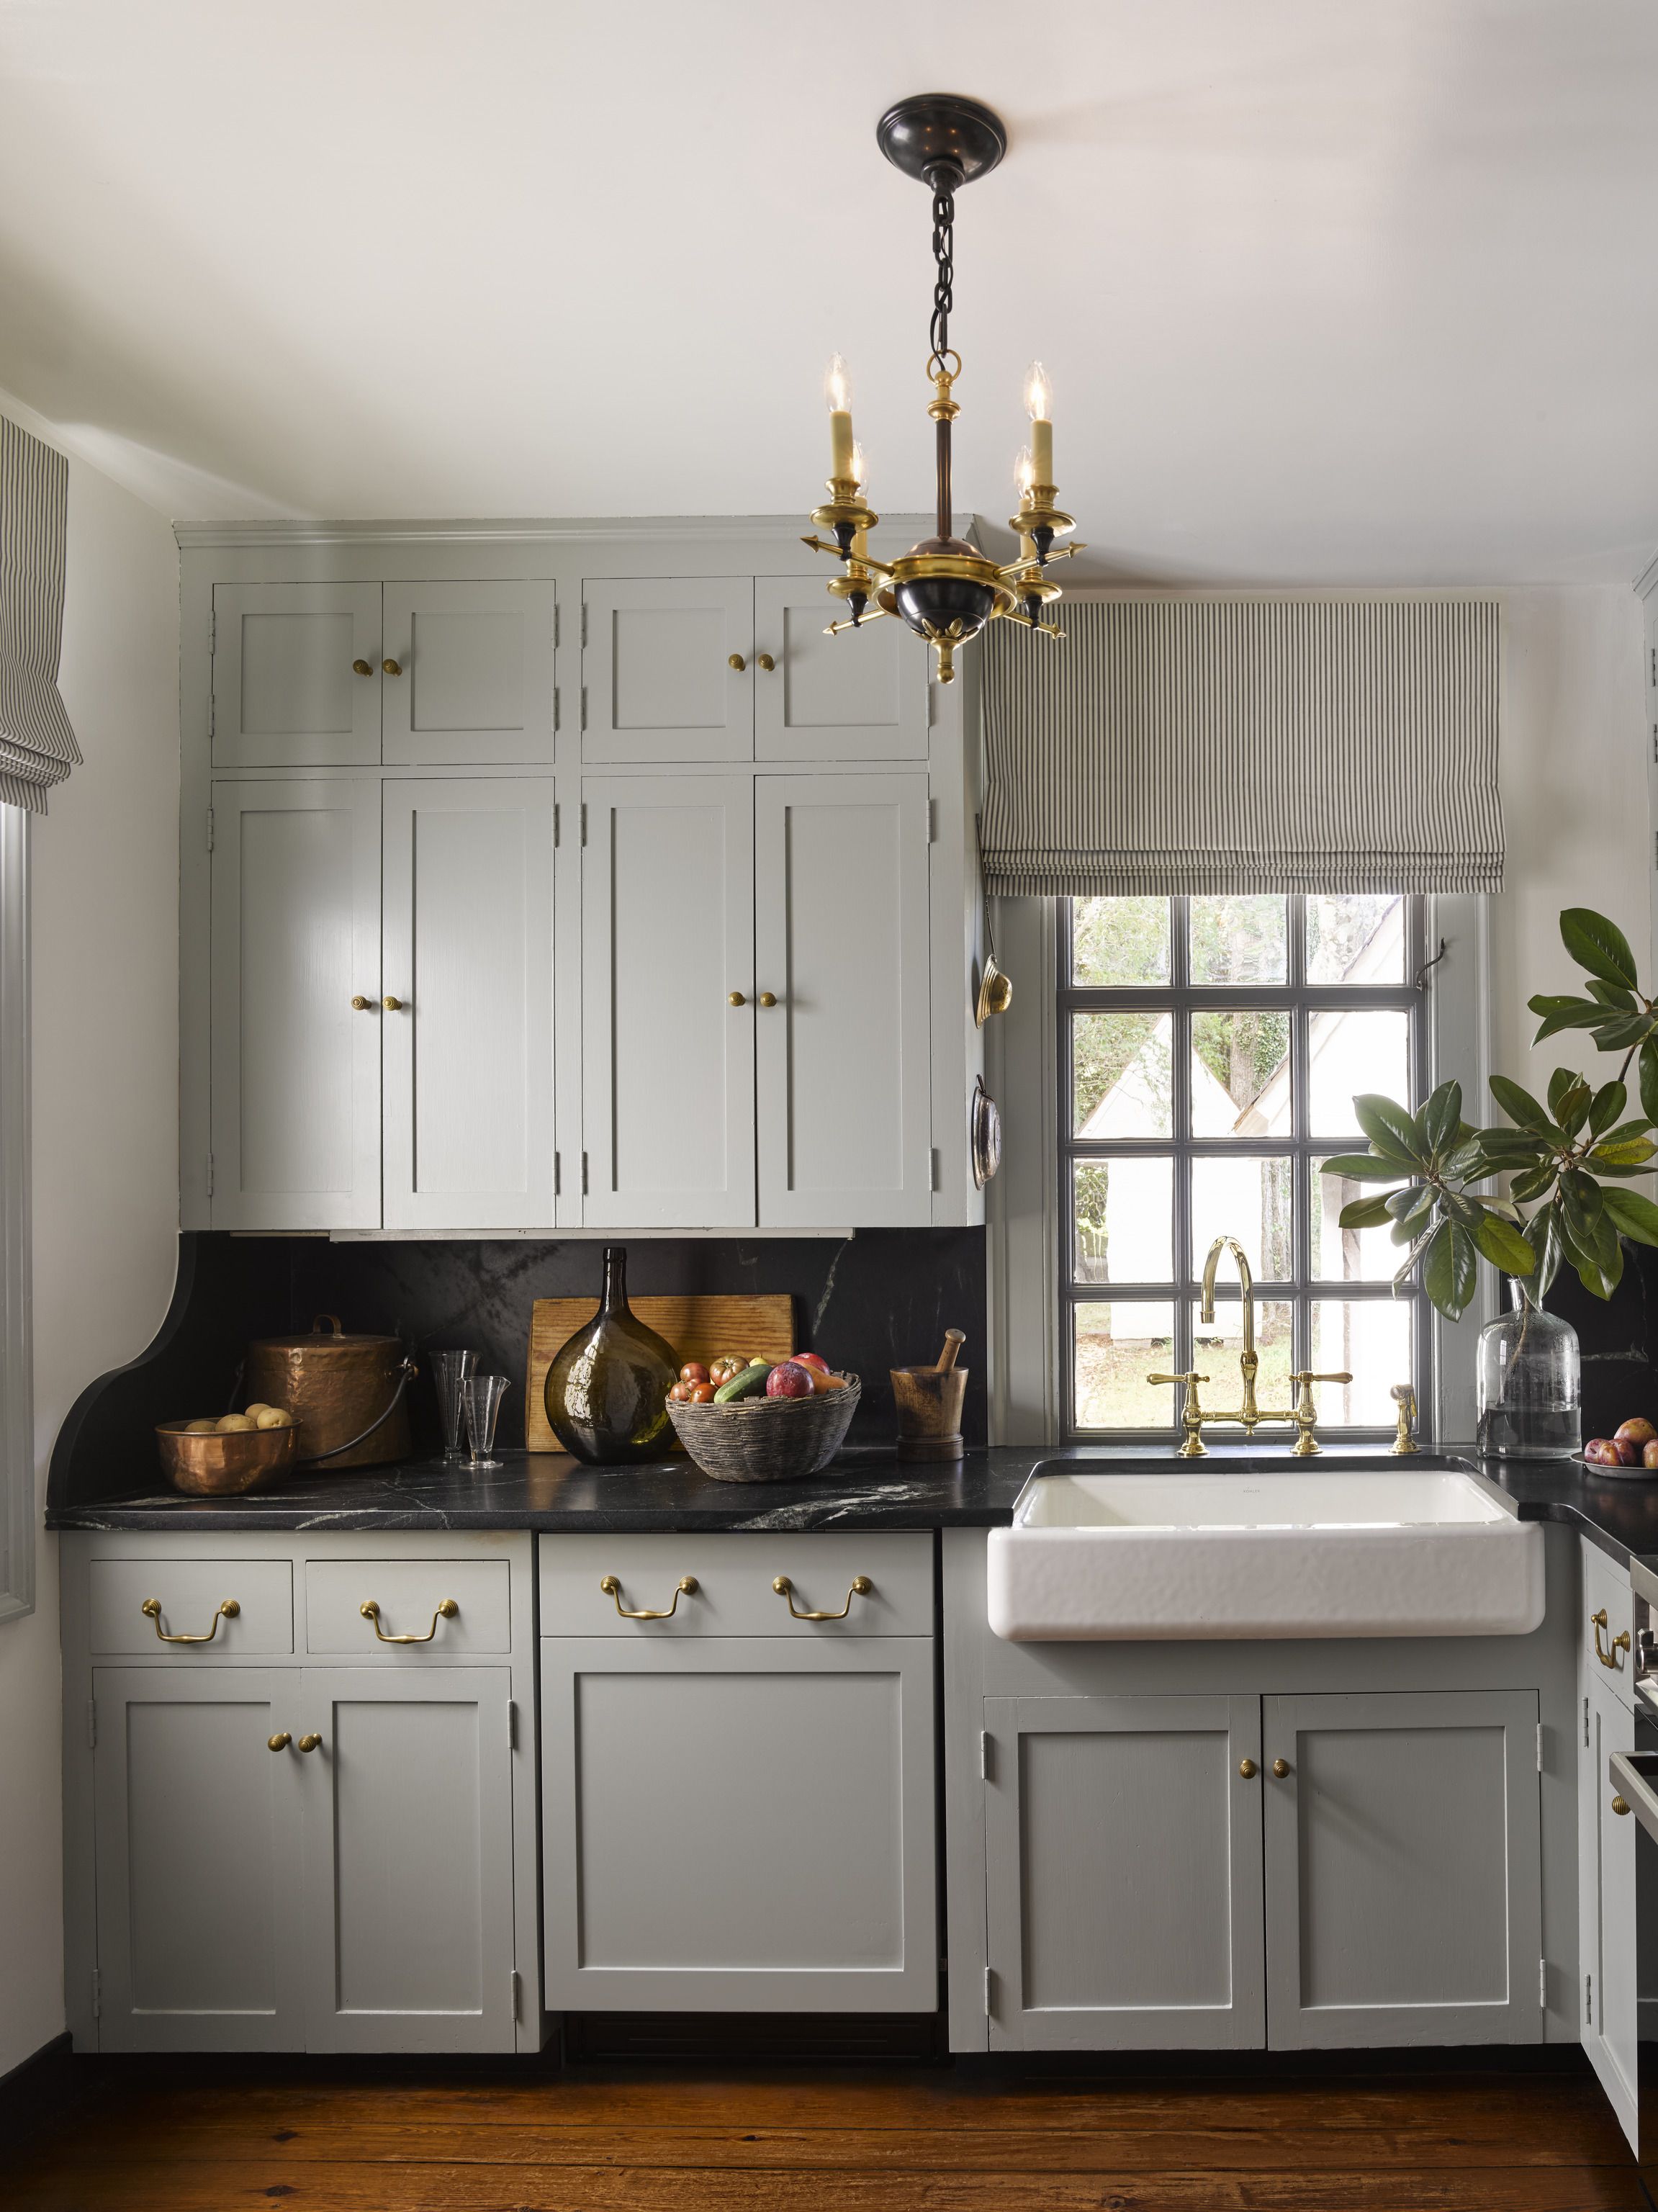 35 best kitchen cabinet ideas - beautiful kitchen cabinet design